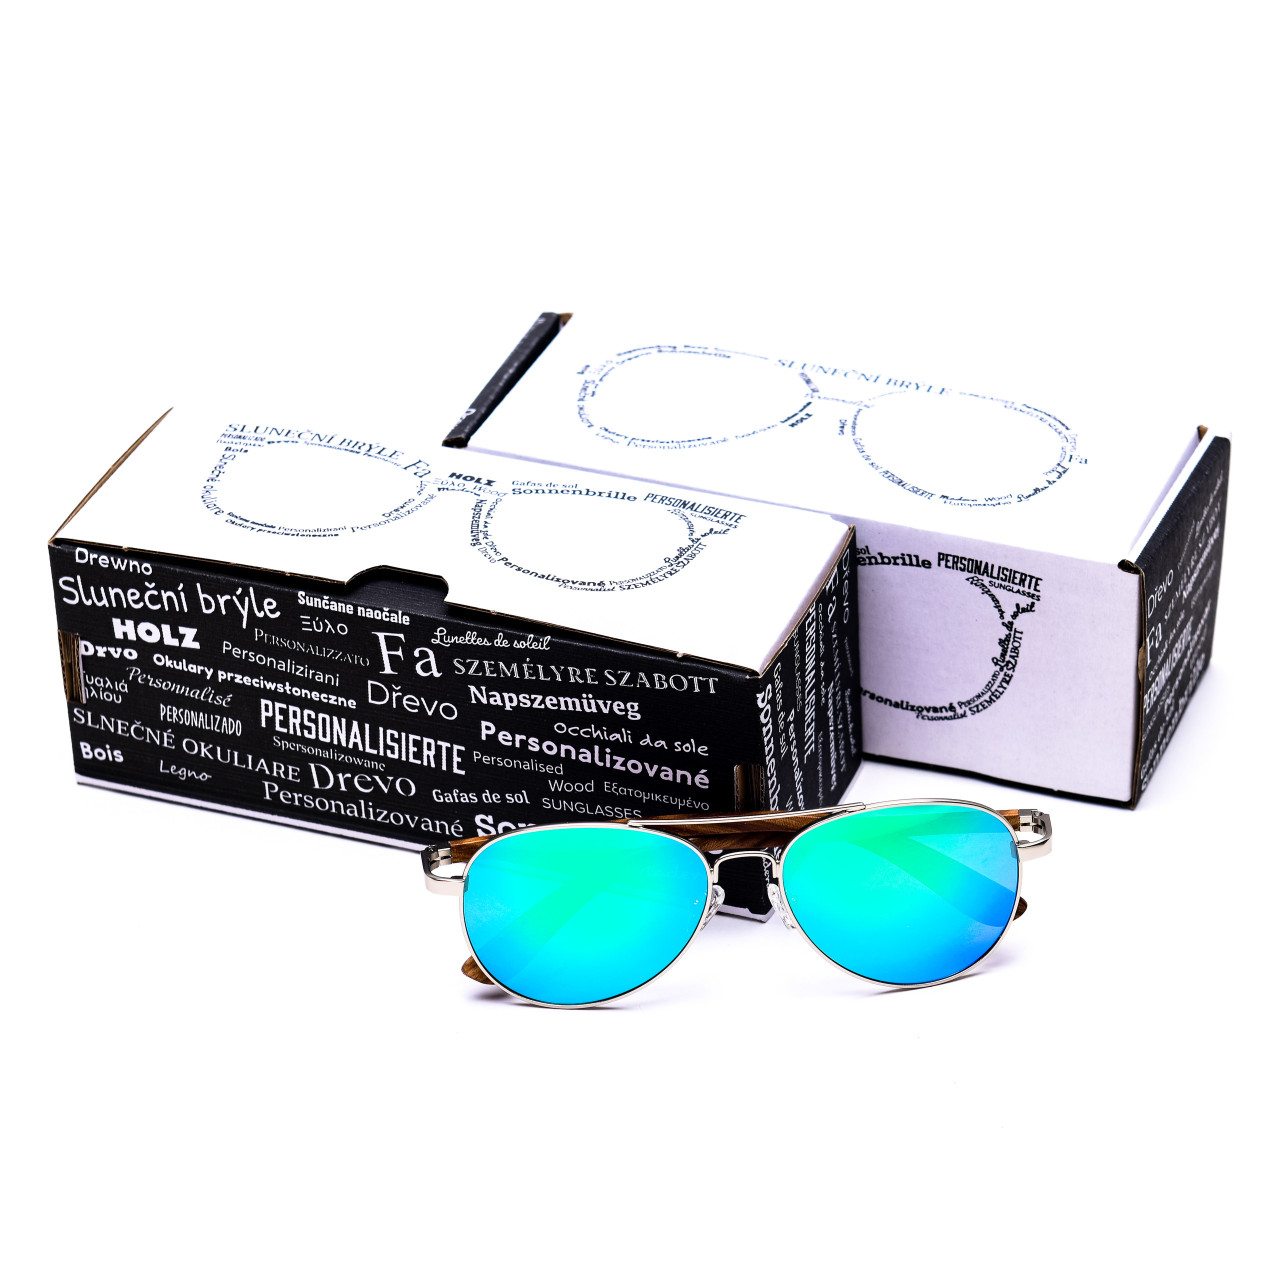 Brýle Aviator – modré čočky + tmavý ořech s gravírováním